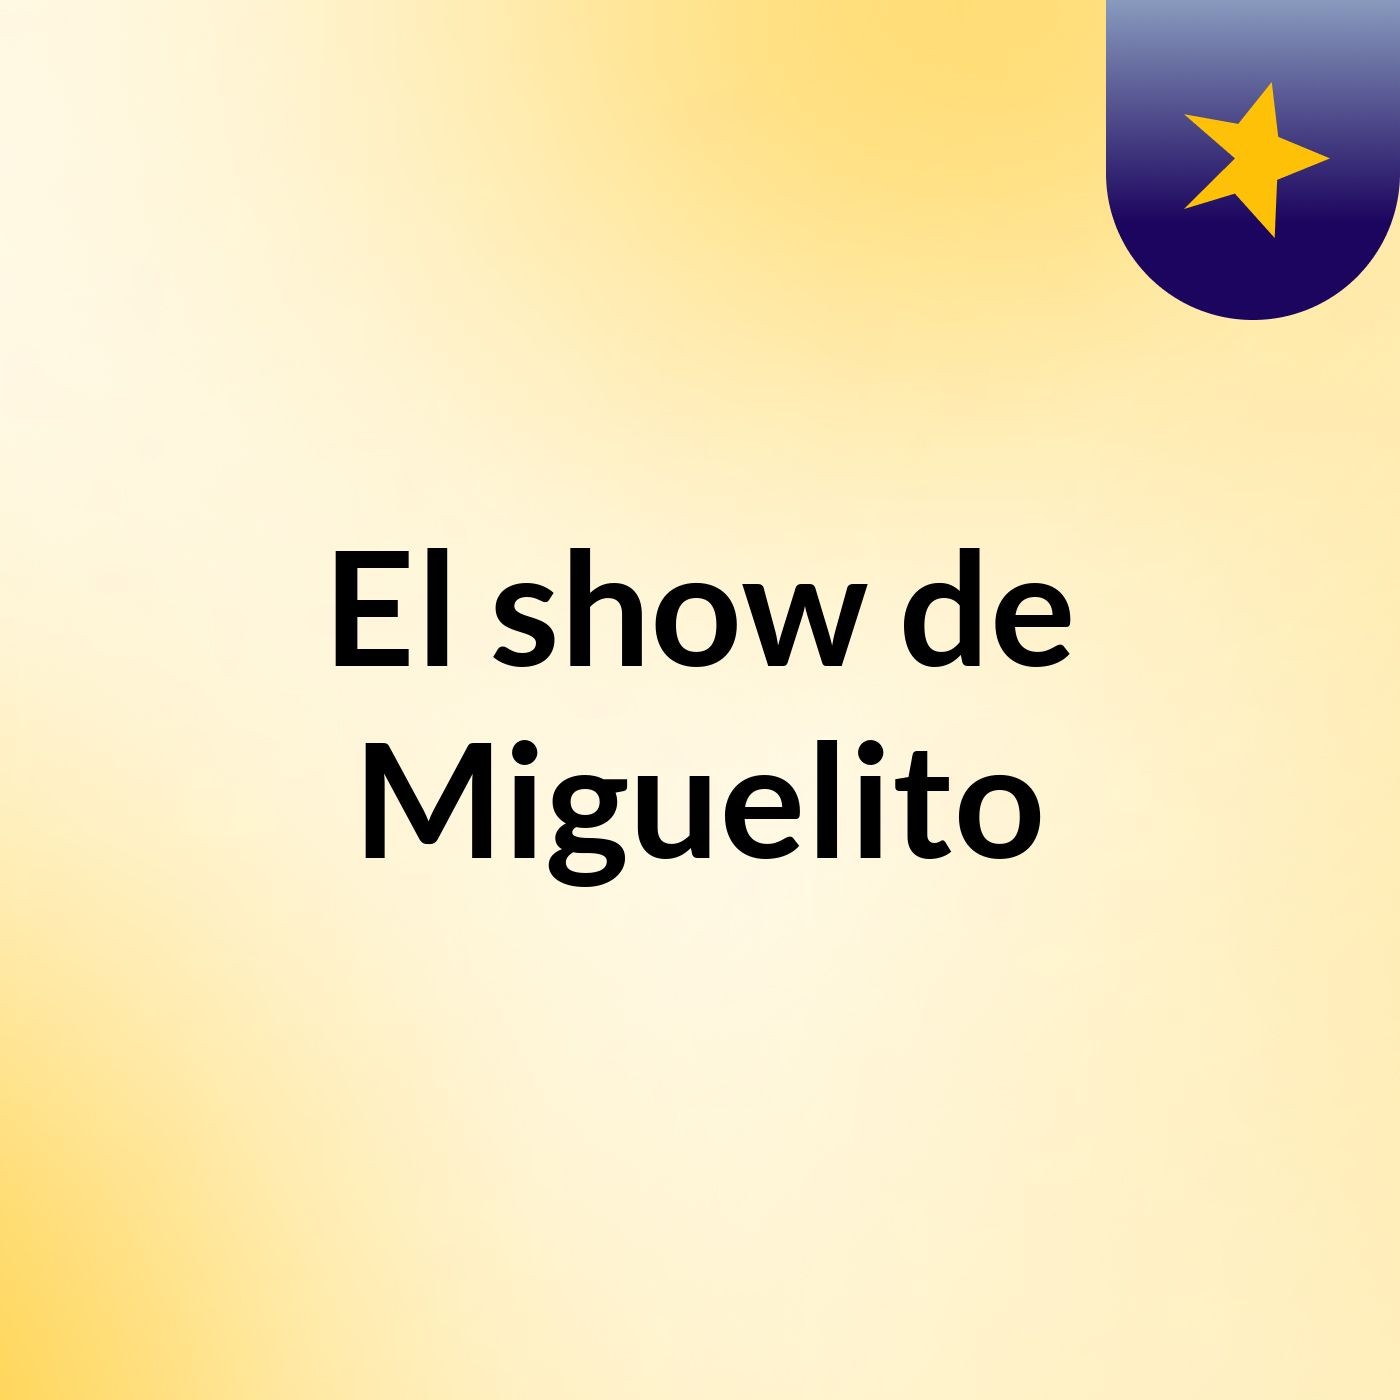 El show de Miguelito